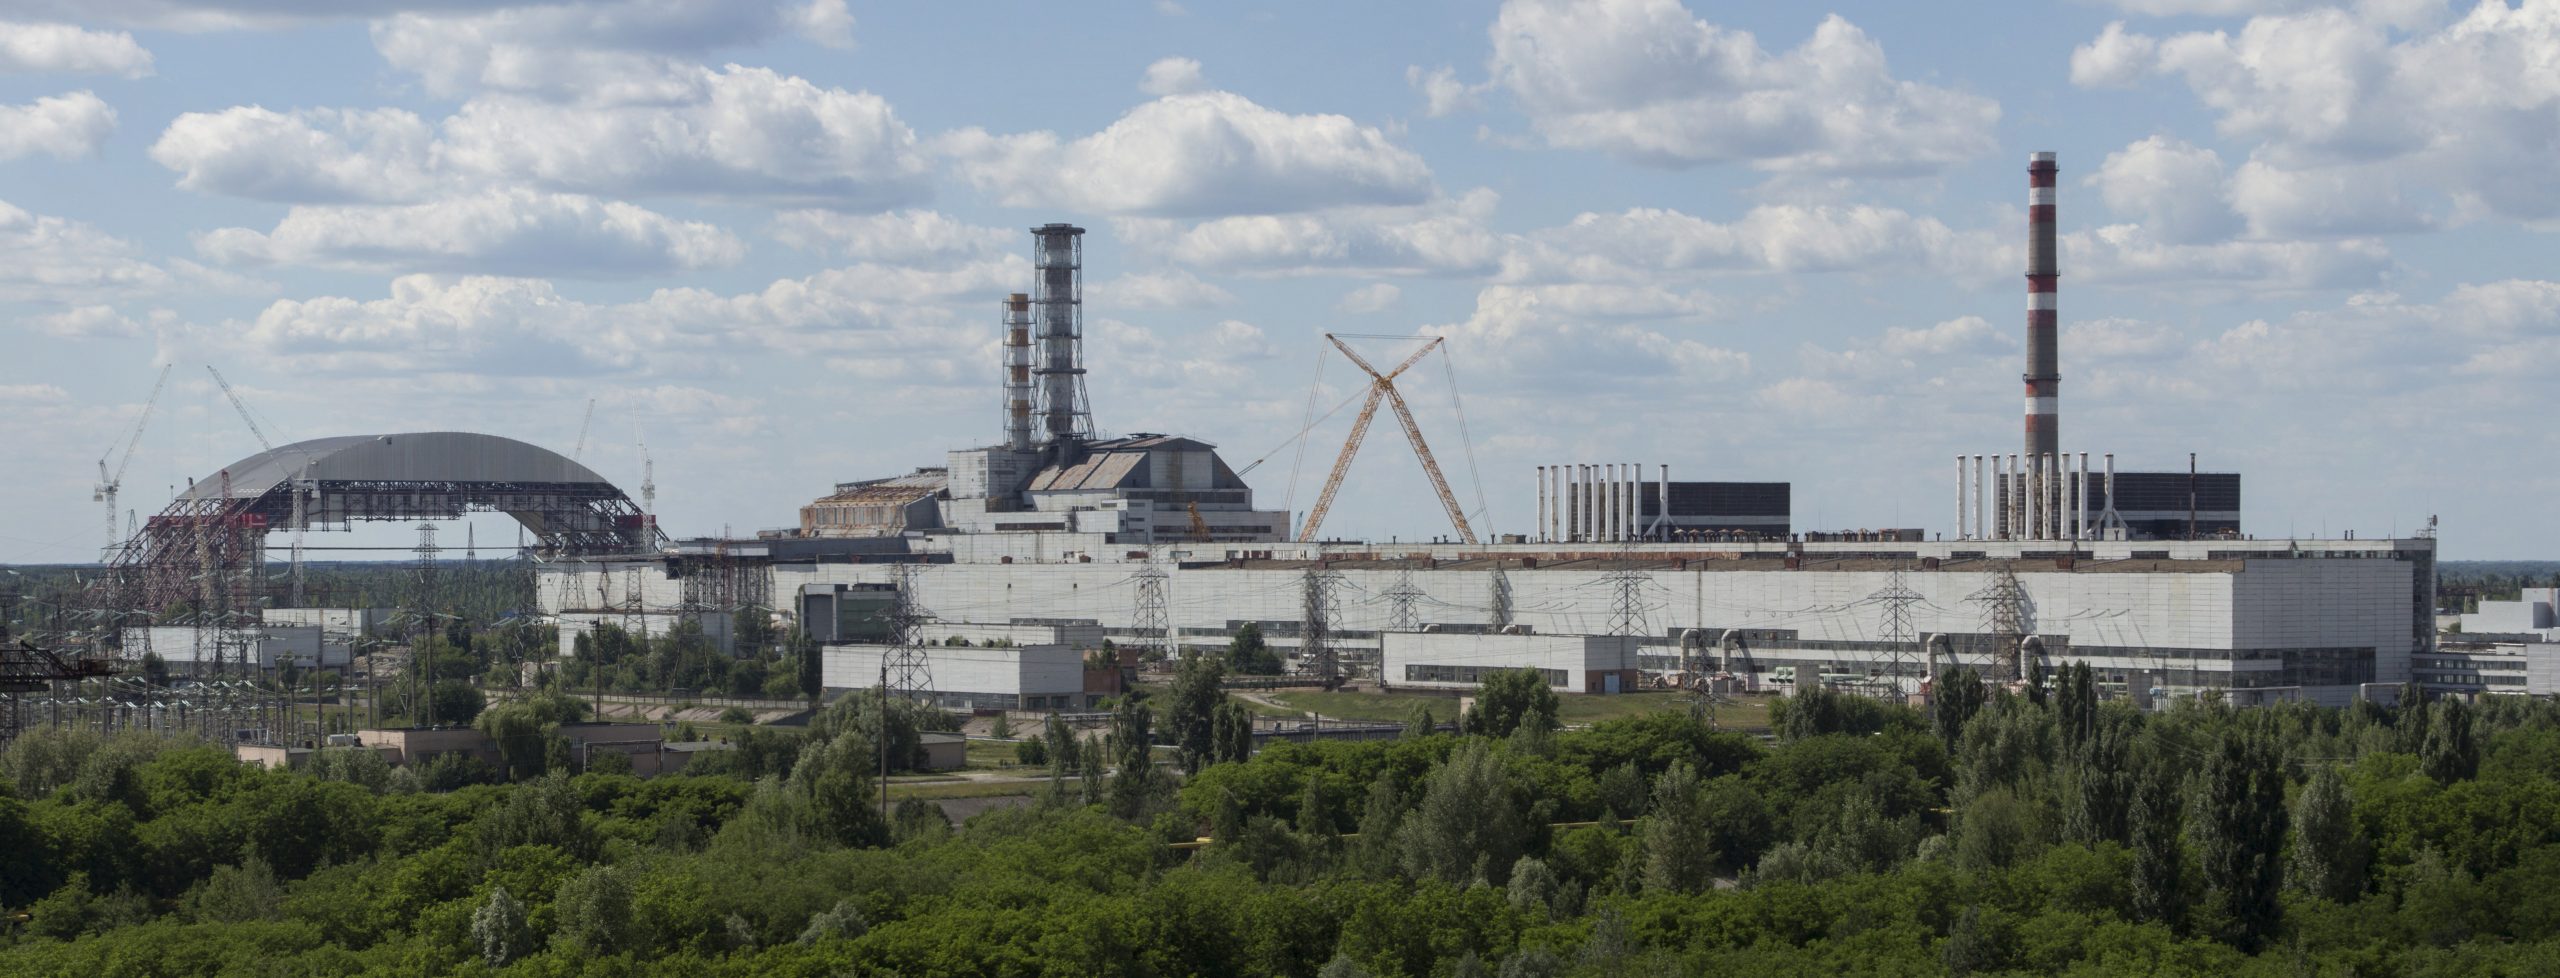 Ucraina: Militarii ruşi au sustras softurile de la Centrala de la Cernobîl, având suspiciunea că aici se produce armament nuclear